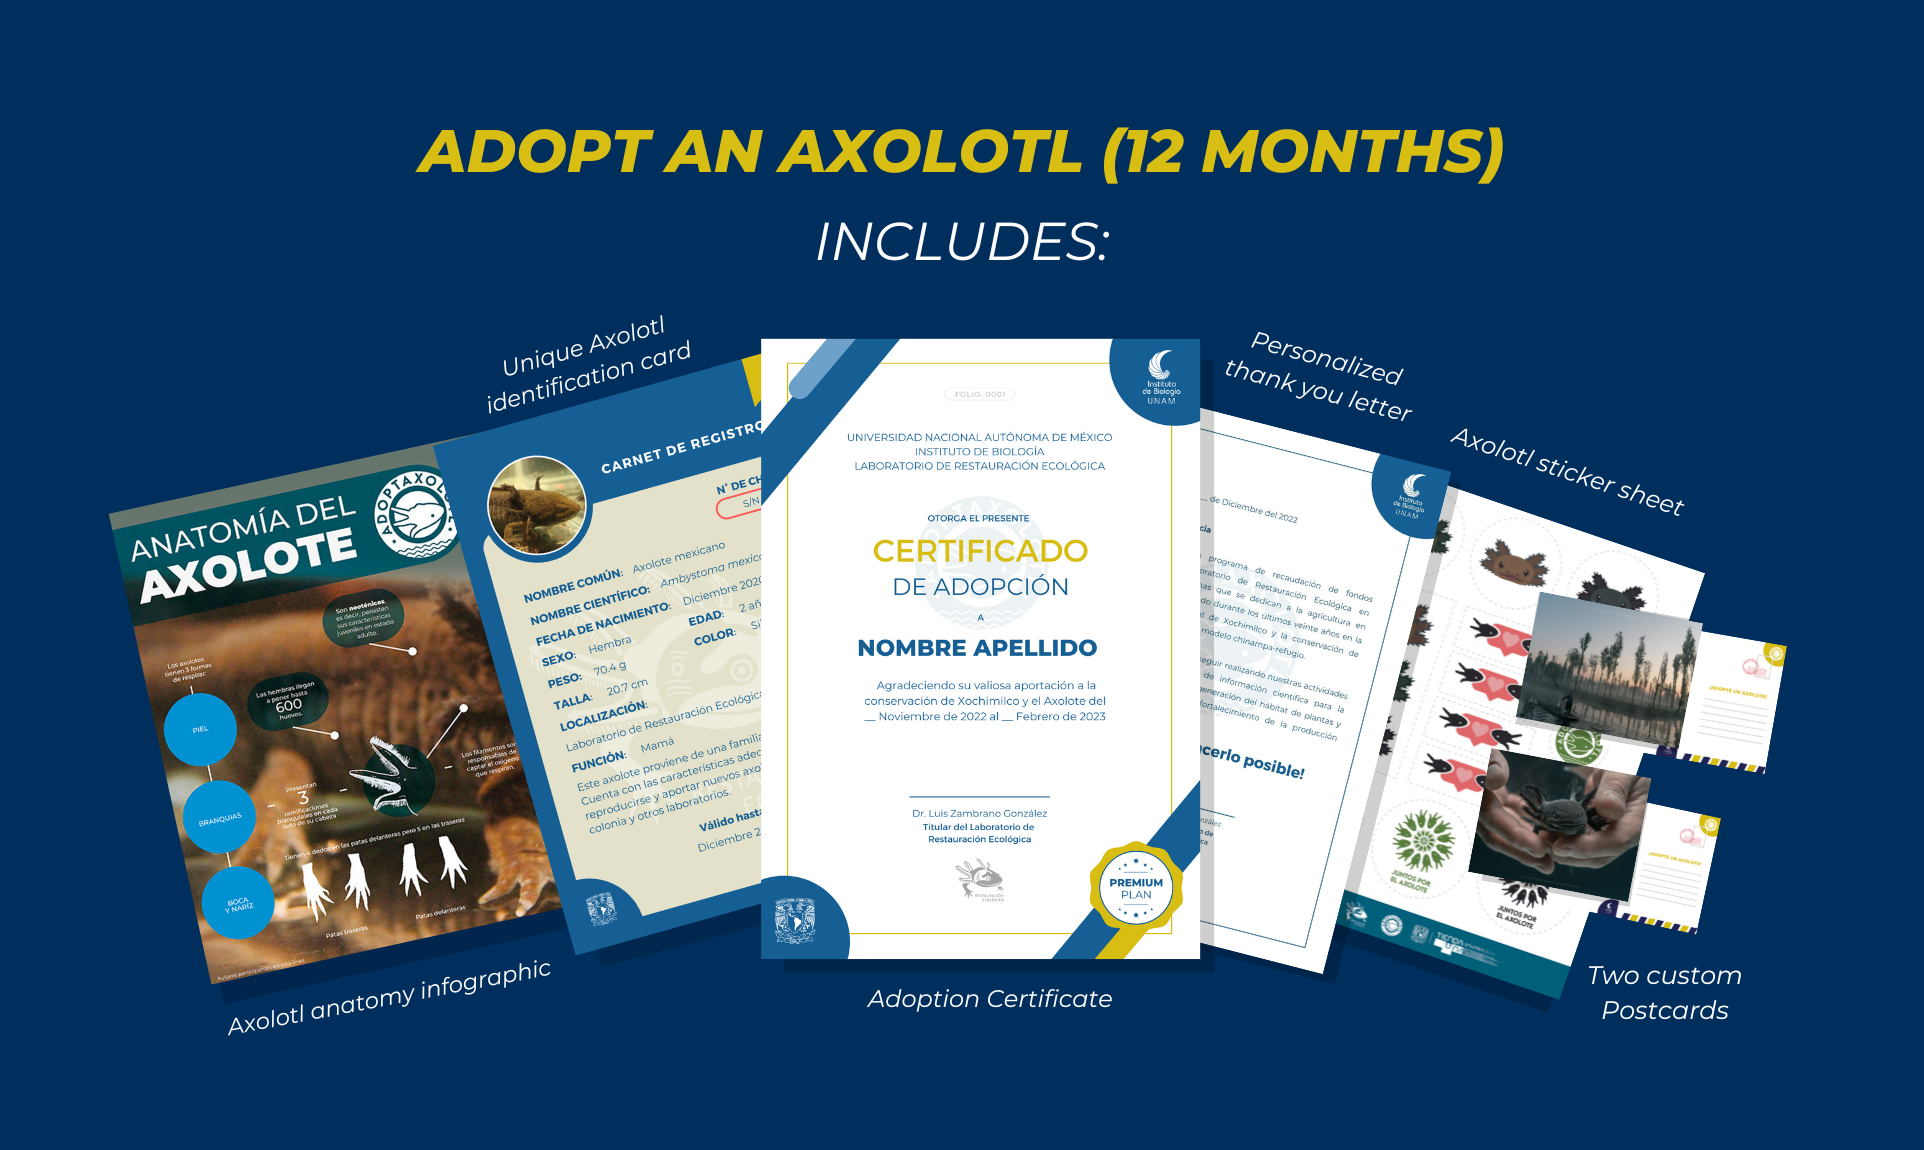 Adoptaxolotl - Axolotl adoption: 12 months